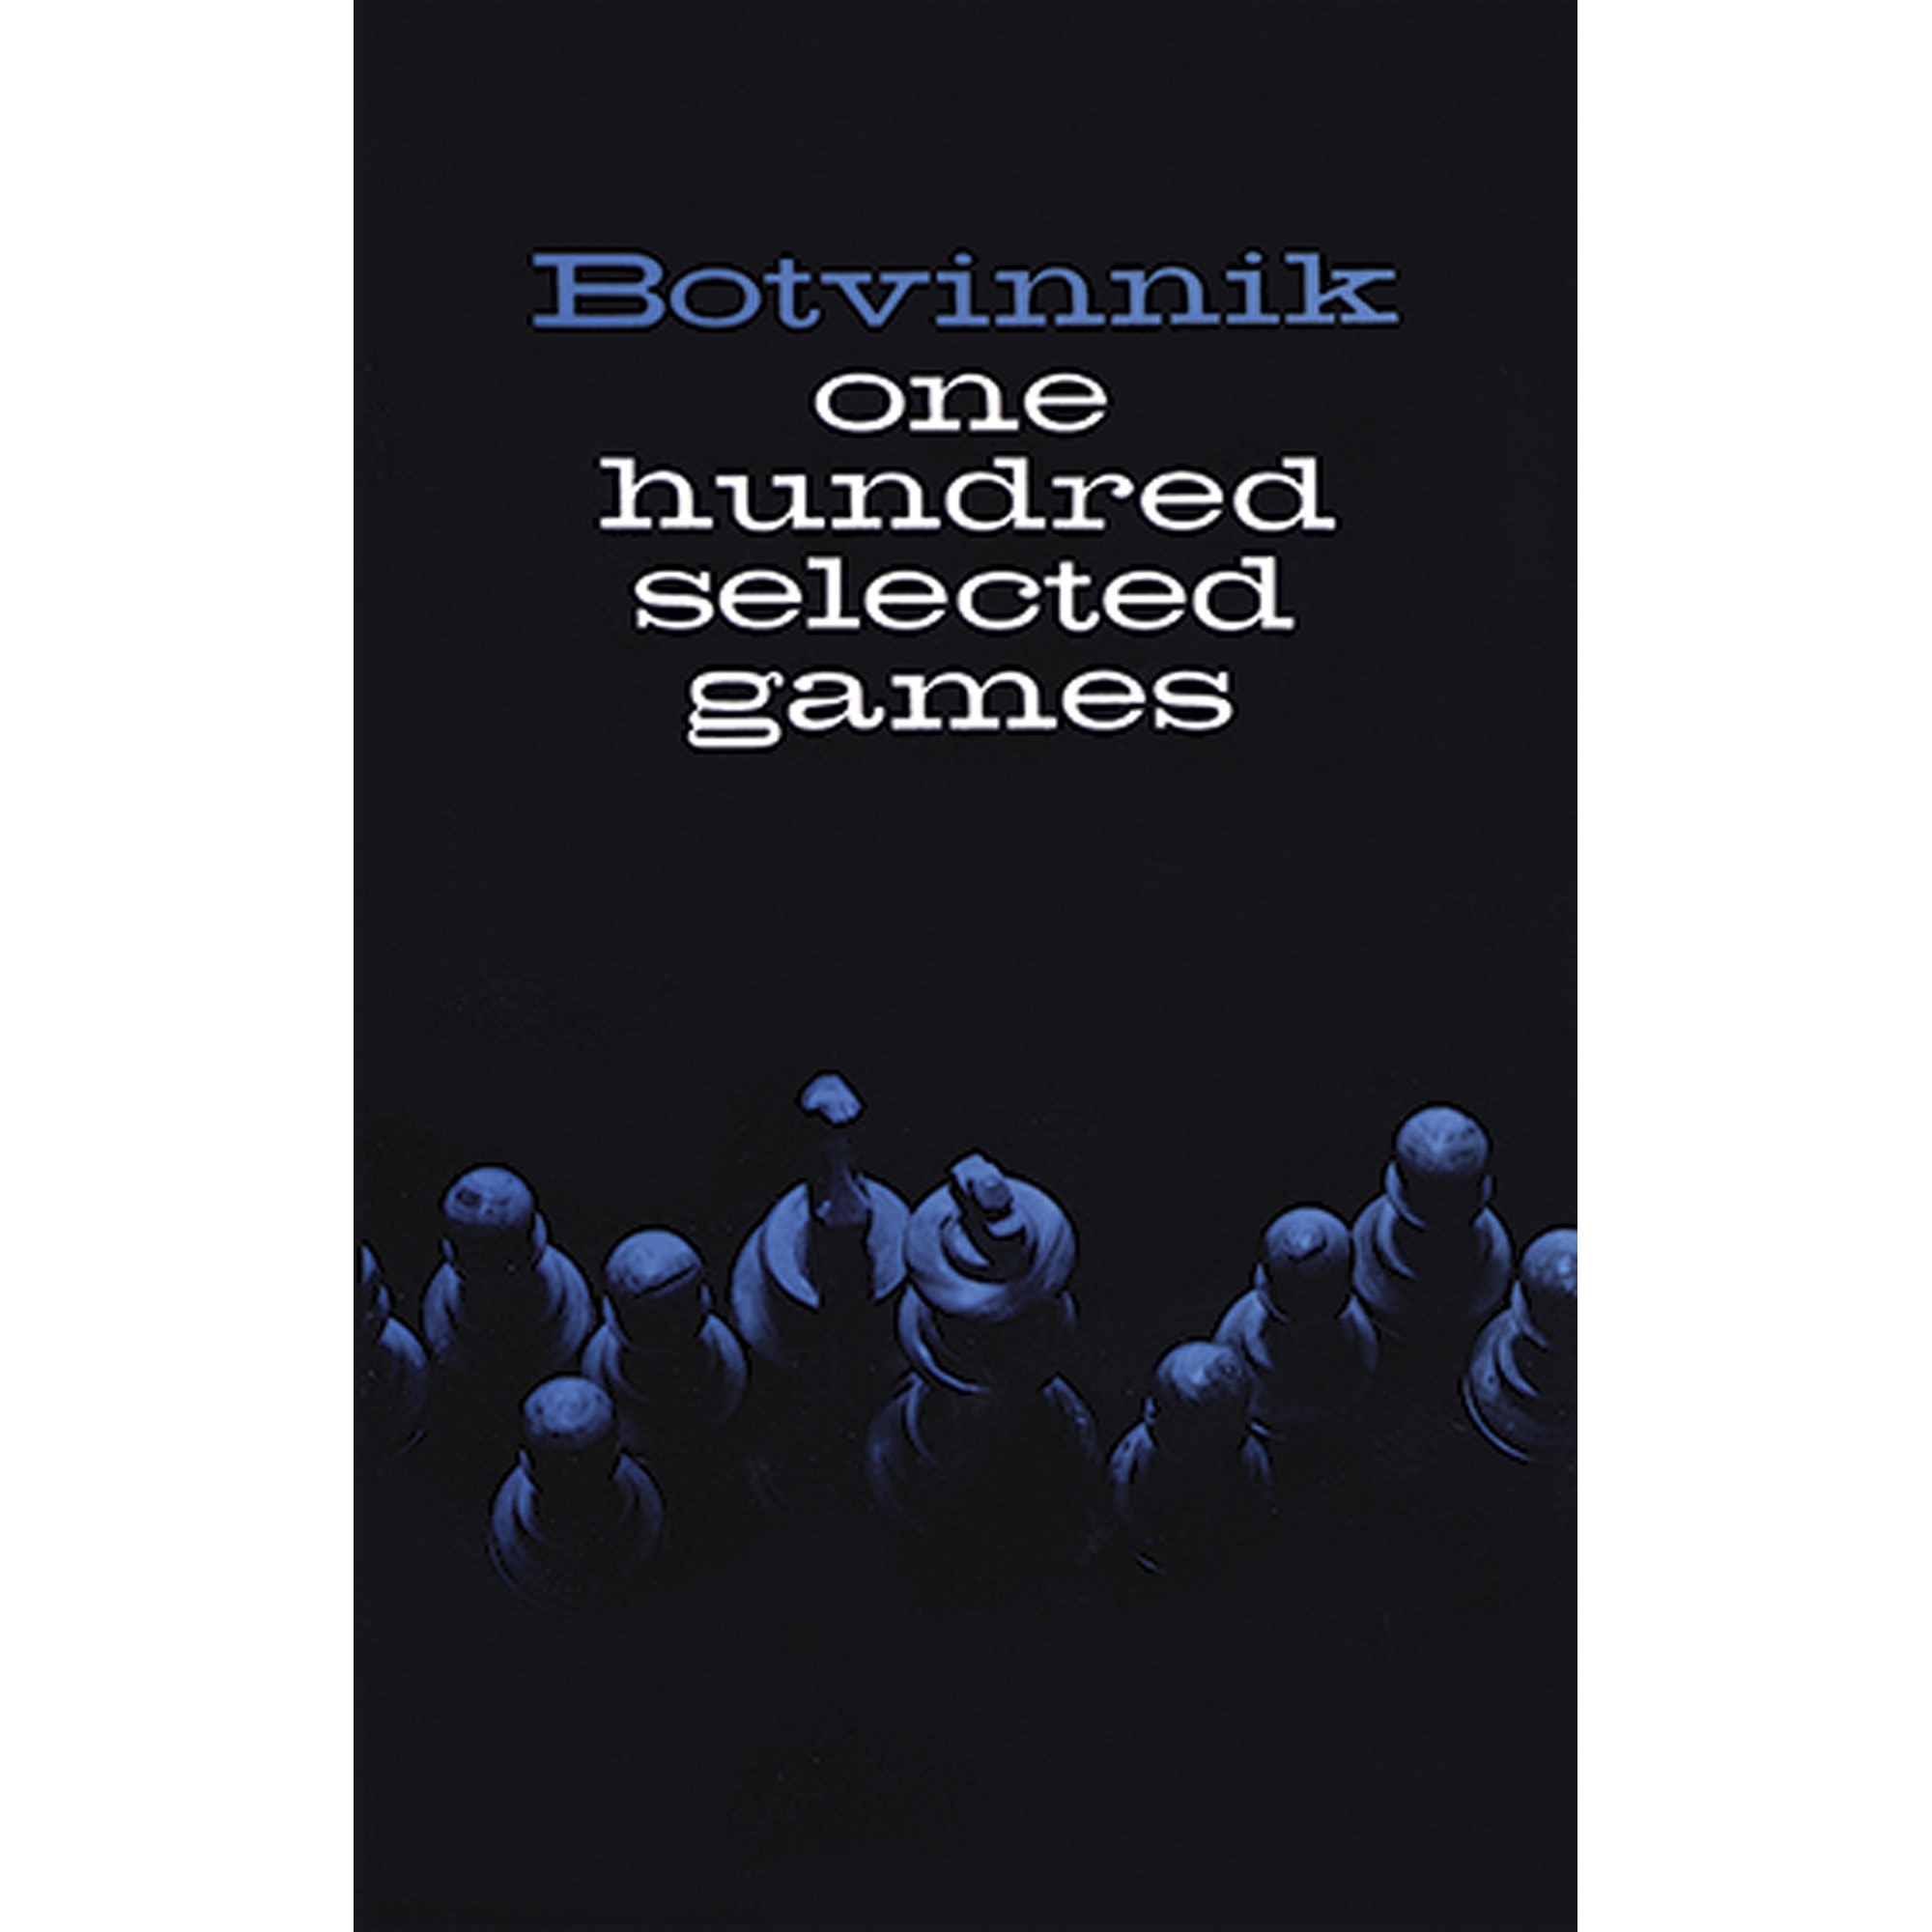 One hundred selected games - Botvinnik